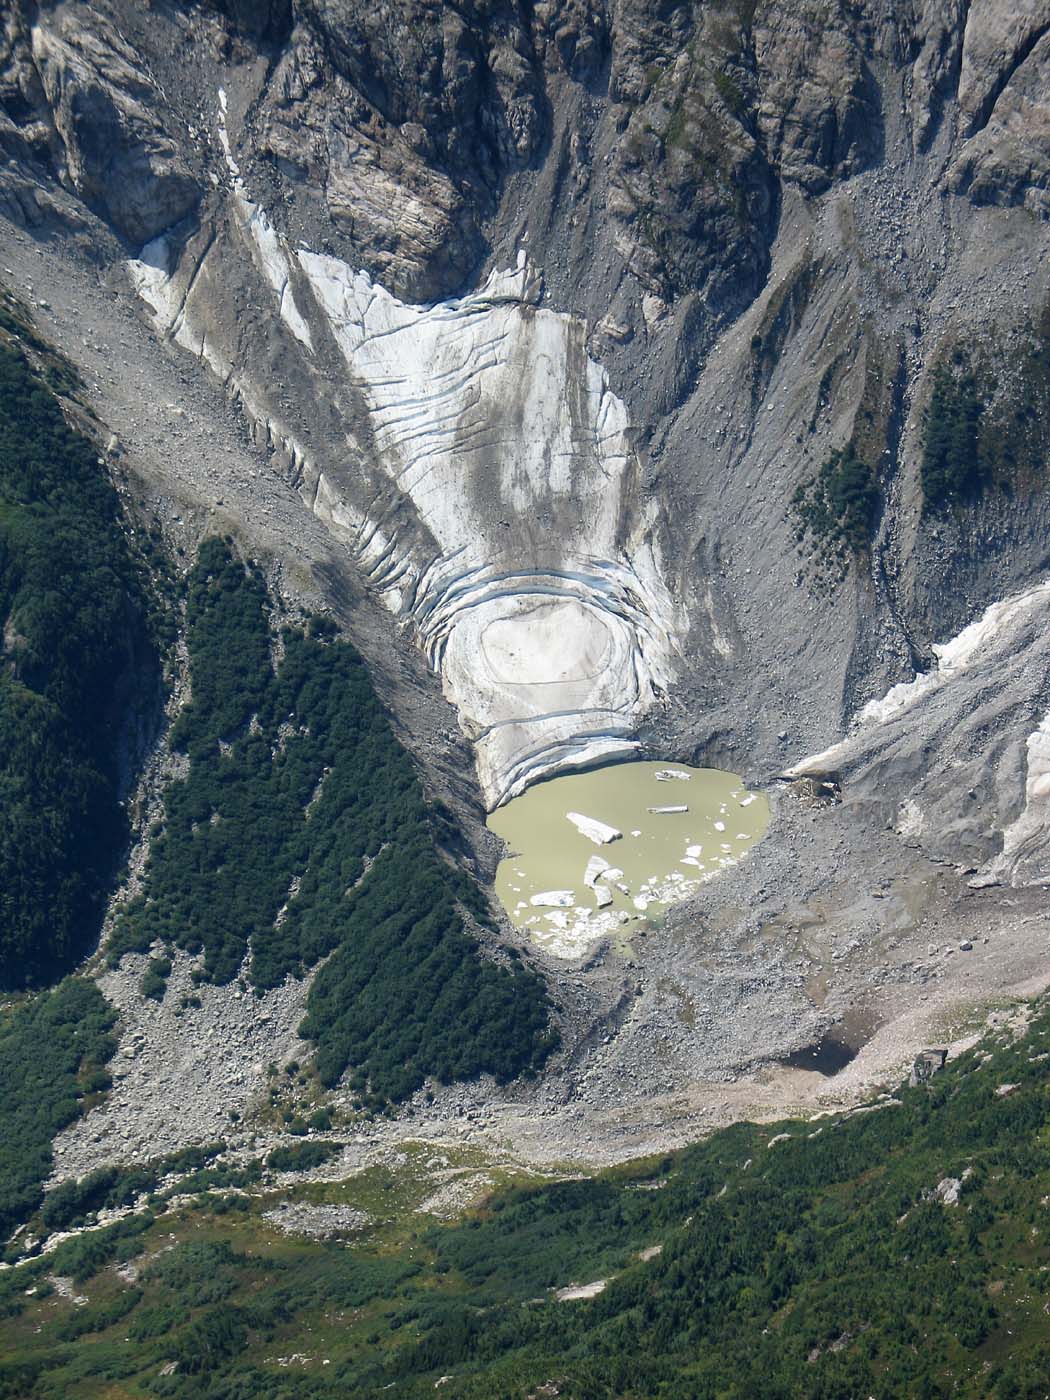 Degenhardt Glacier, Remnant/Lake Below Terminus (Degenhardt090105-14.jpg)